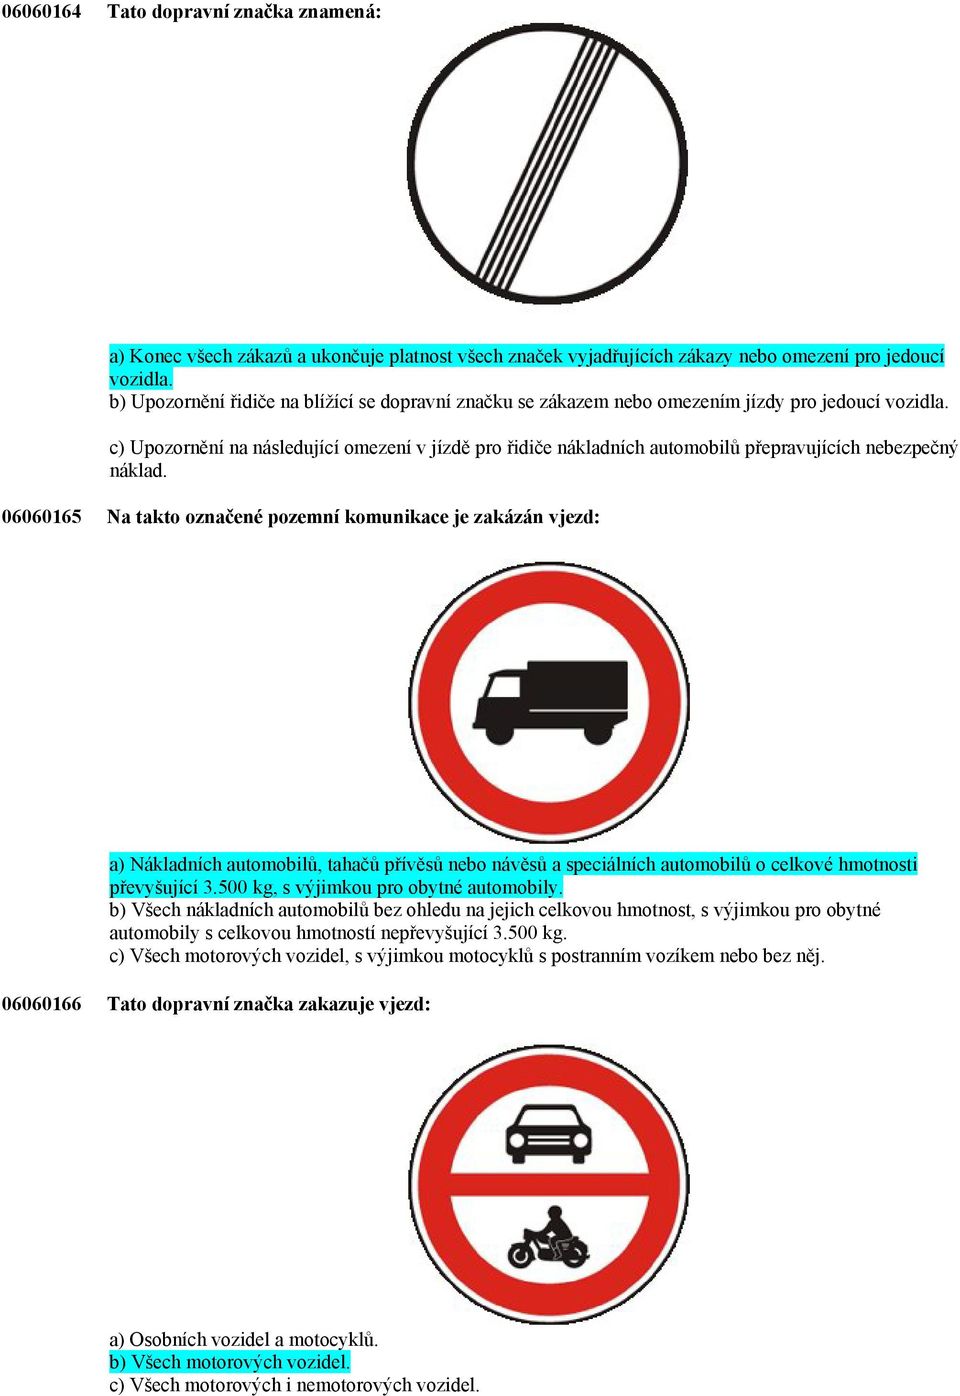 Tato dopravní značka: a) Zakazuje vjezd potahových vozidel. b) Zakazuje  vjezd nemotorových vozidel. c) Zakazuje vjezd zemědělských strojů. - PDF  Free Download